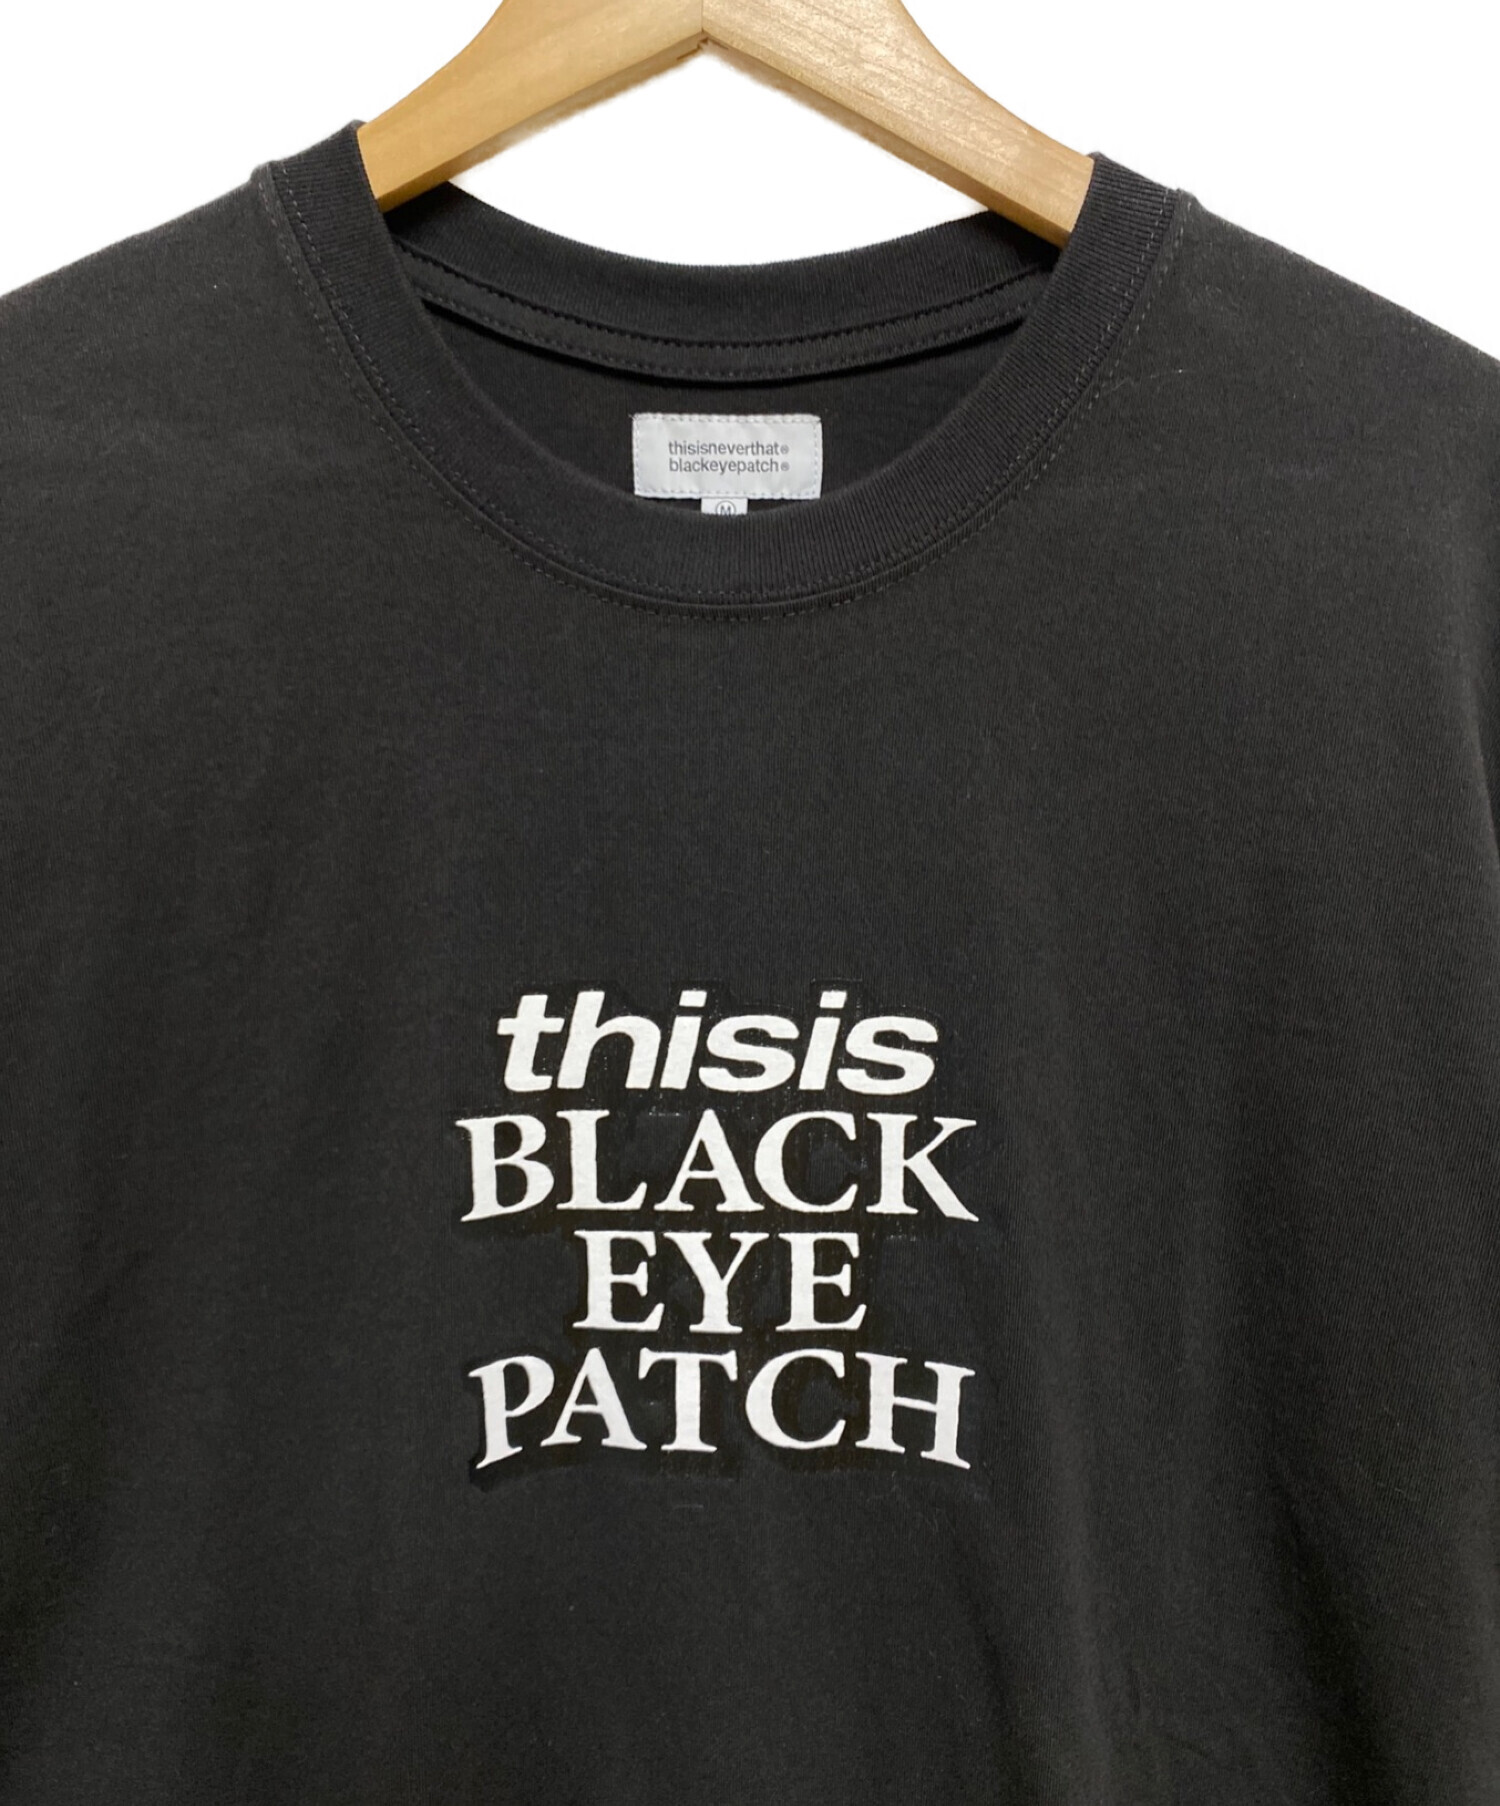 BlackEyePatch (ブラックアイパッチ) thisisneverthat (ディスイズネバーザット) コラボプリントTシャツ ブラック  サイズ:М 未使用品